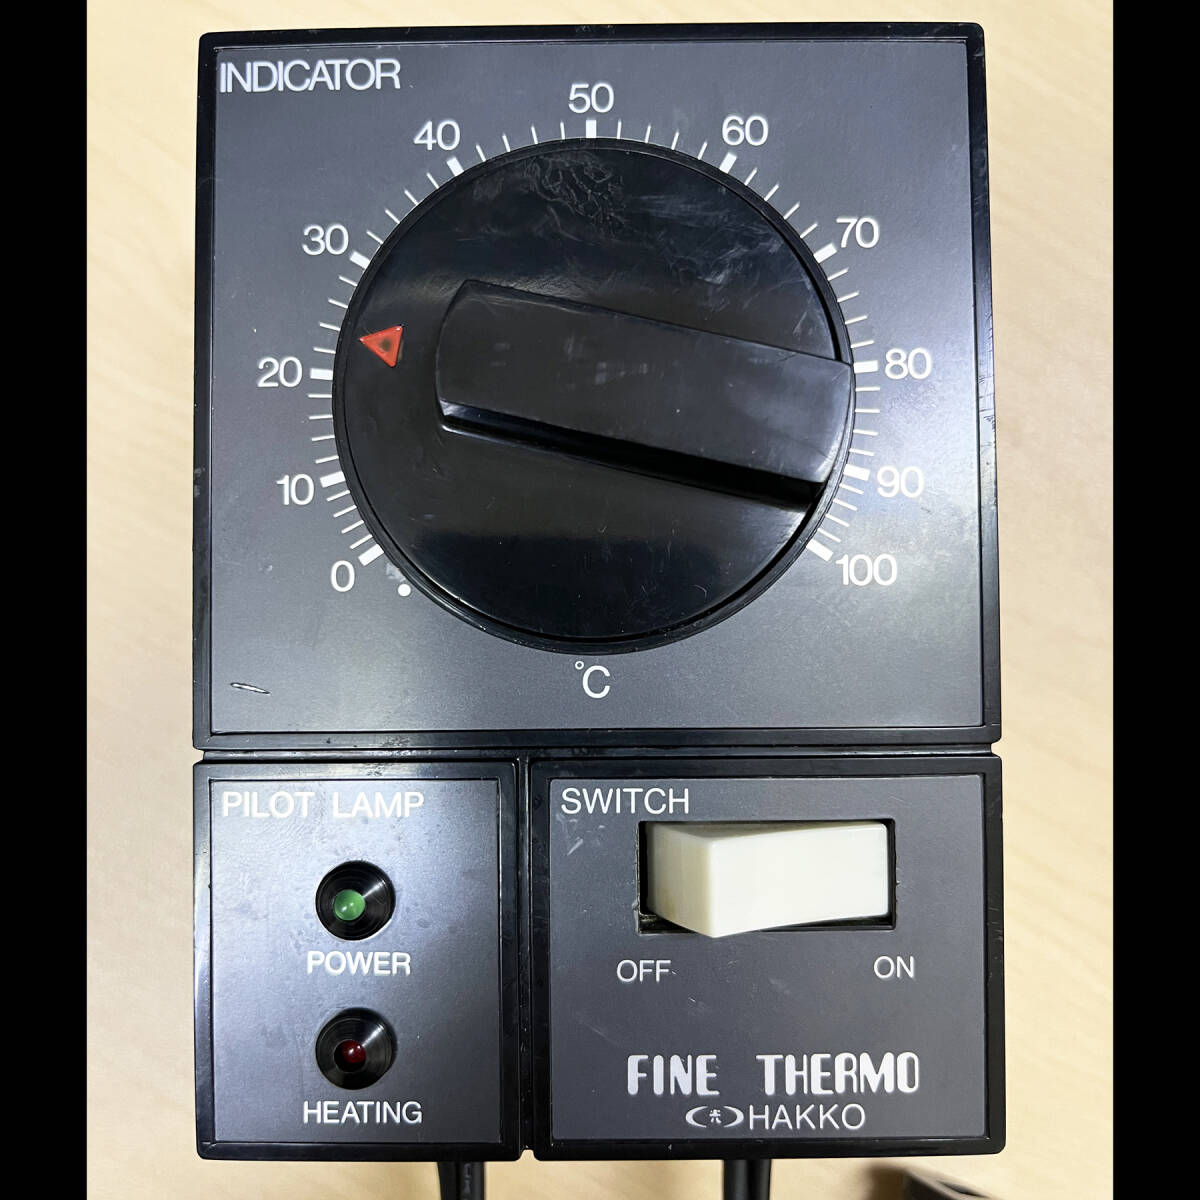 八光 ファインサーモ F-3型 FFC-1100 ヒーター専用アナログ温度コントローラー HAKKO FINE THERMO 温度管理器具 取付金具付 の画像2